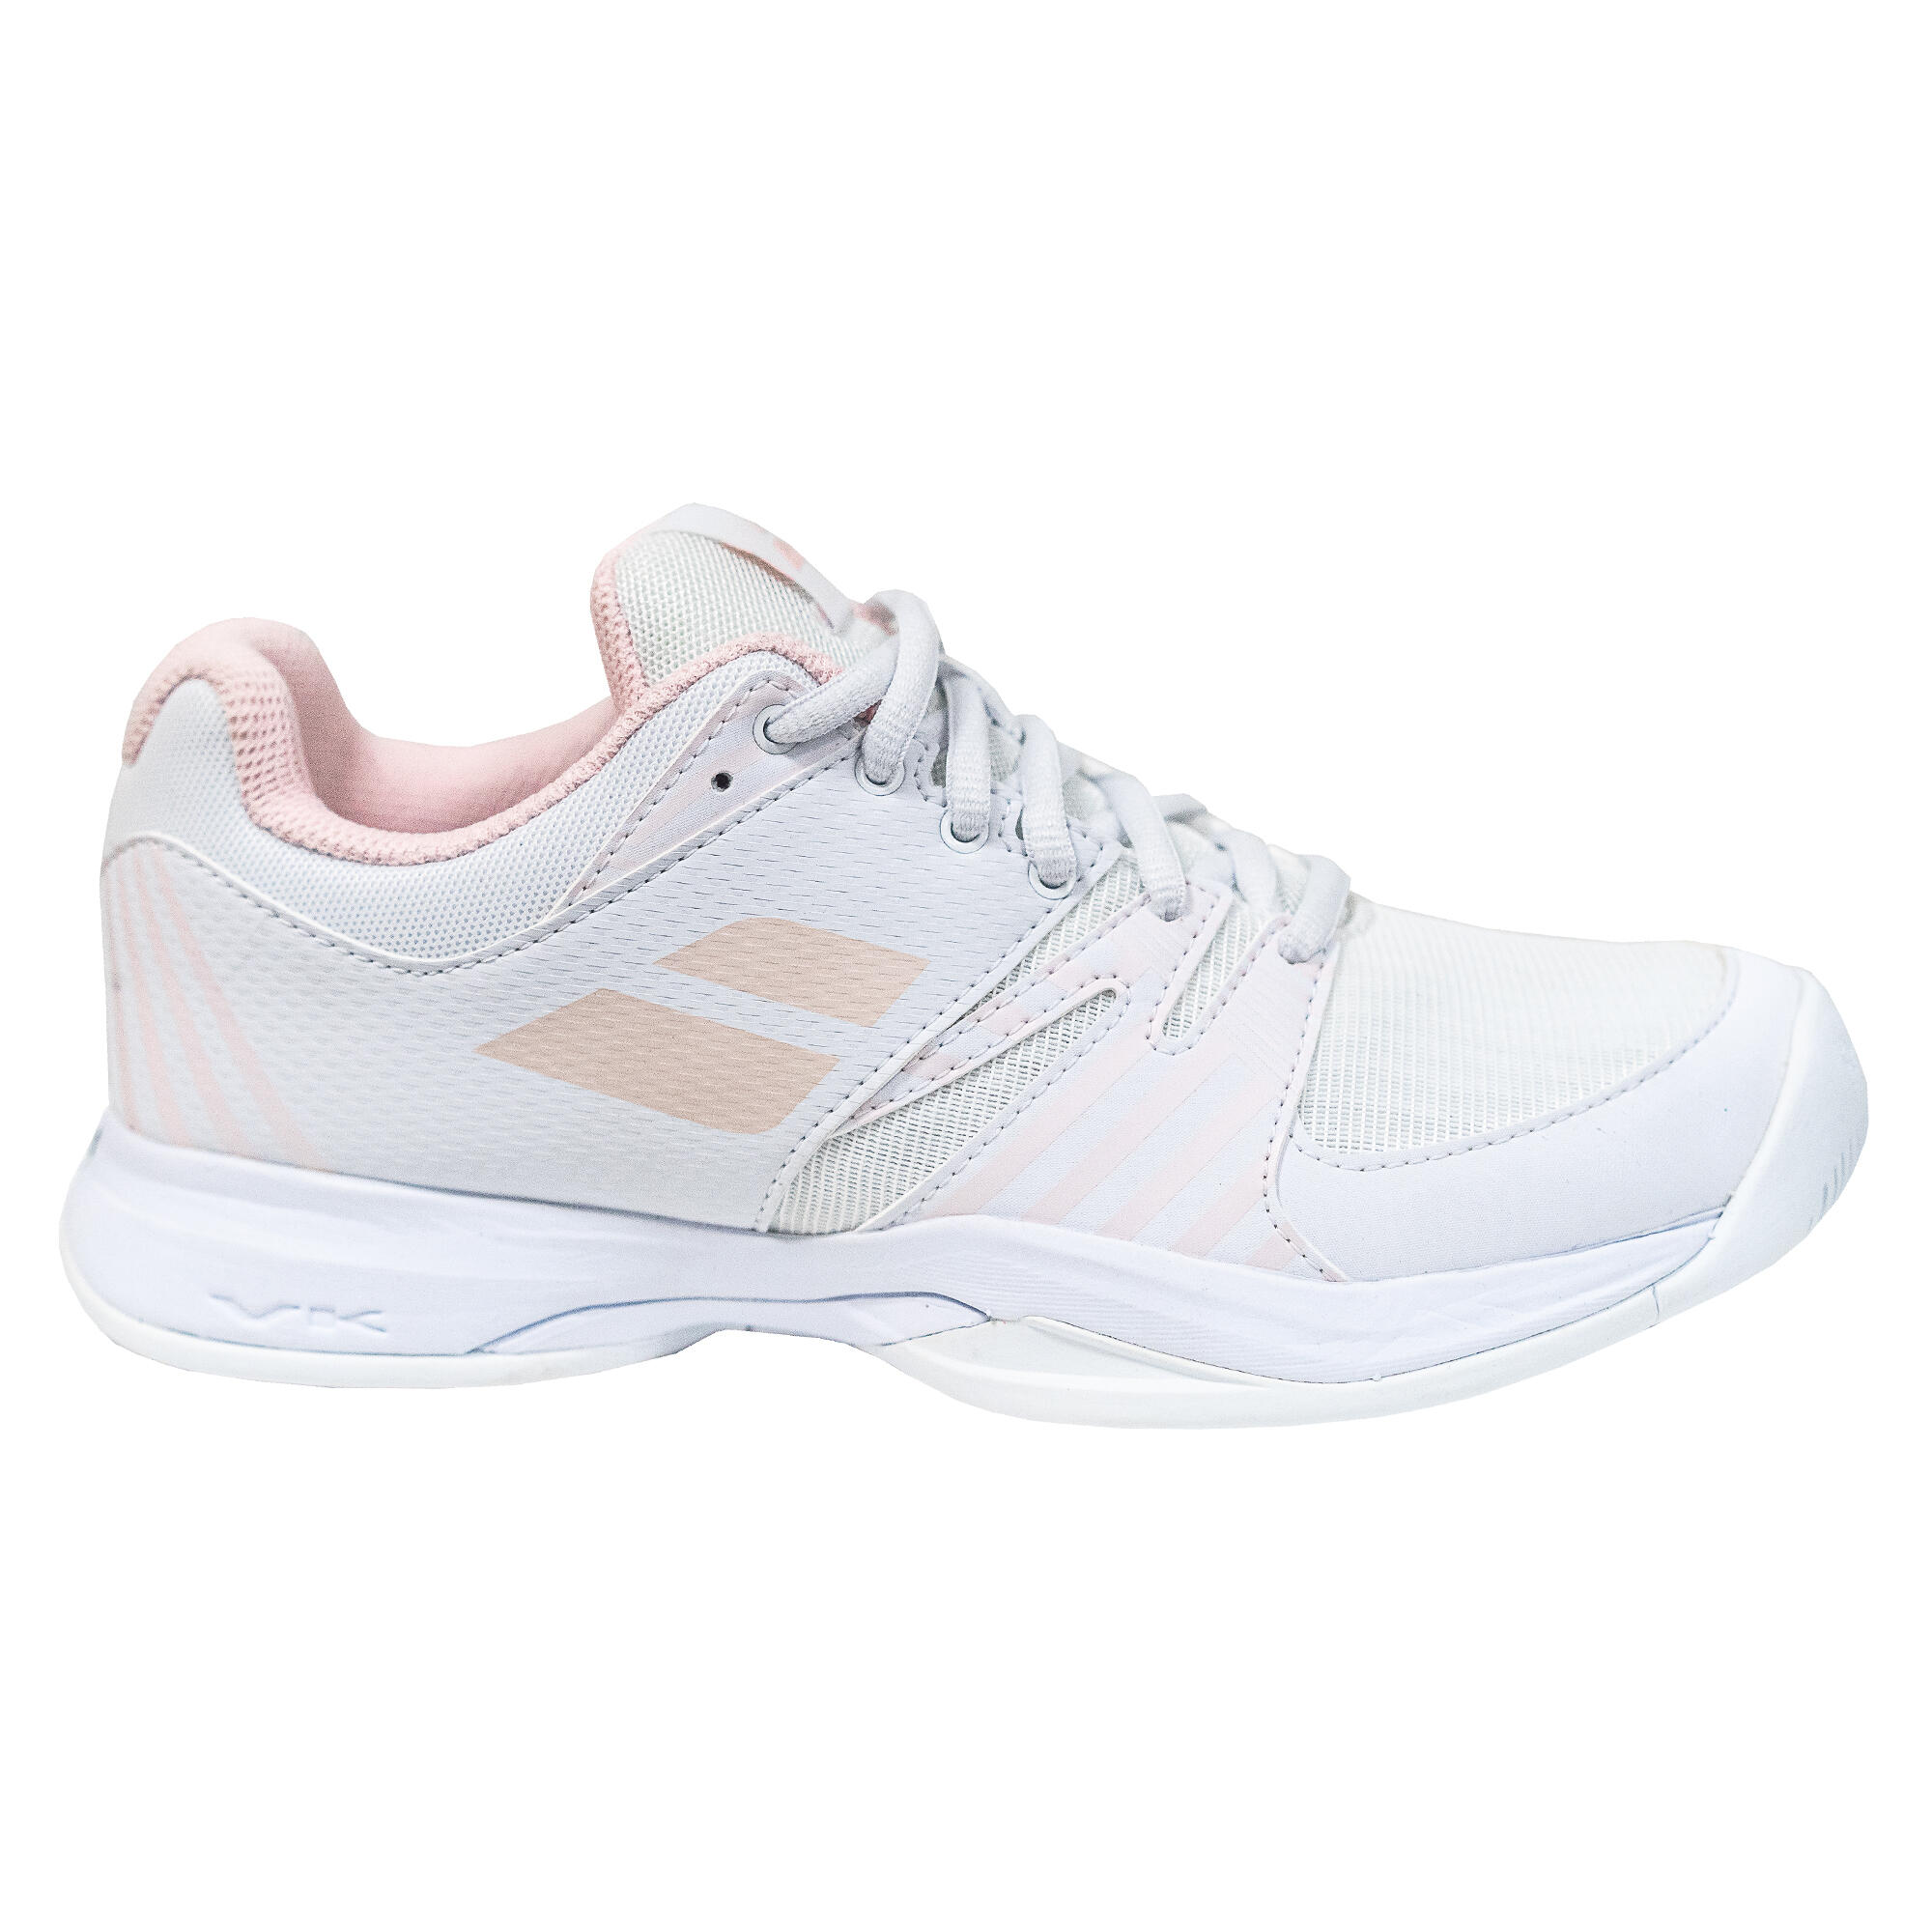 Women's Tennis Shoes Evolite - White 1/4